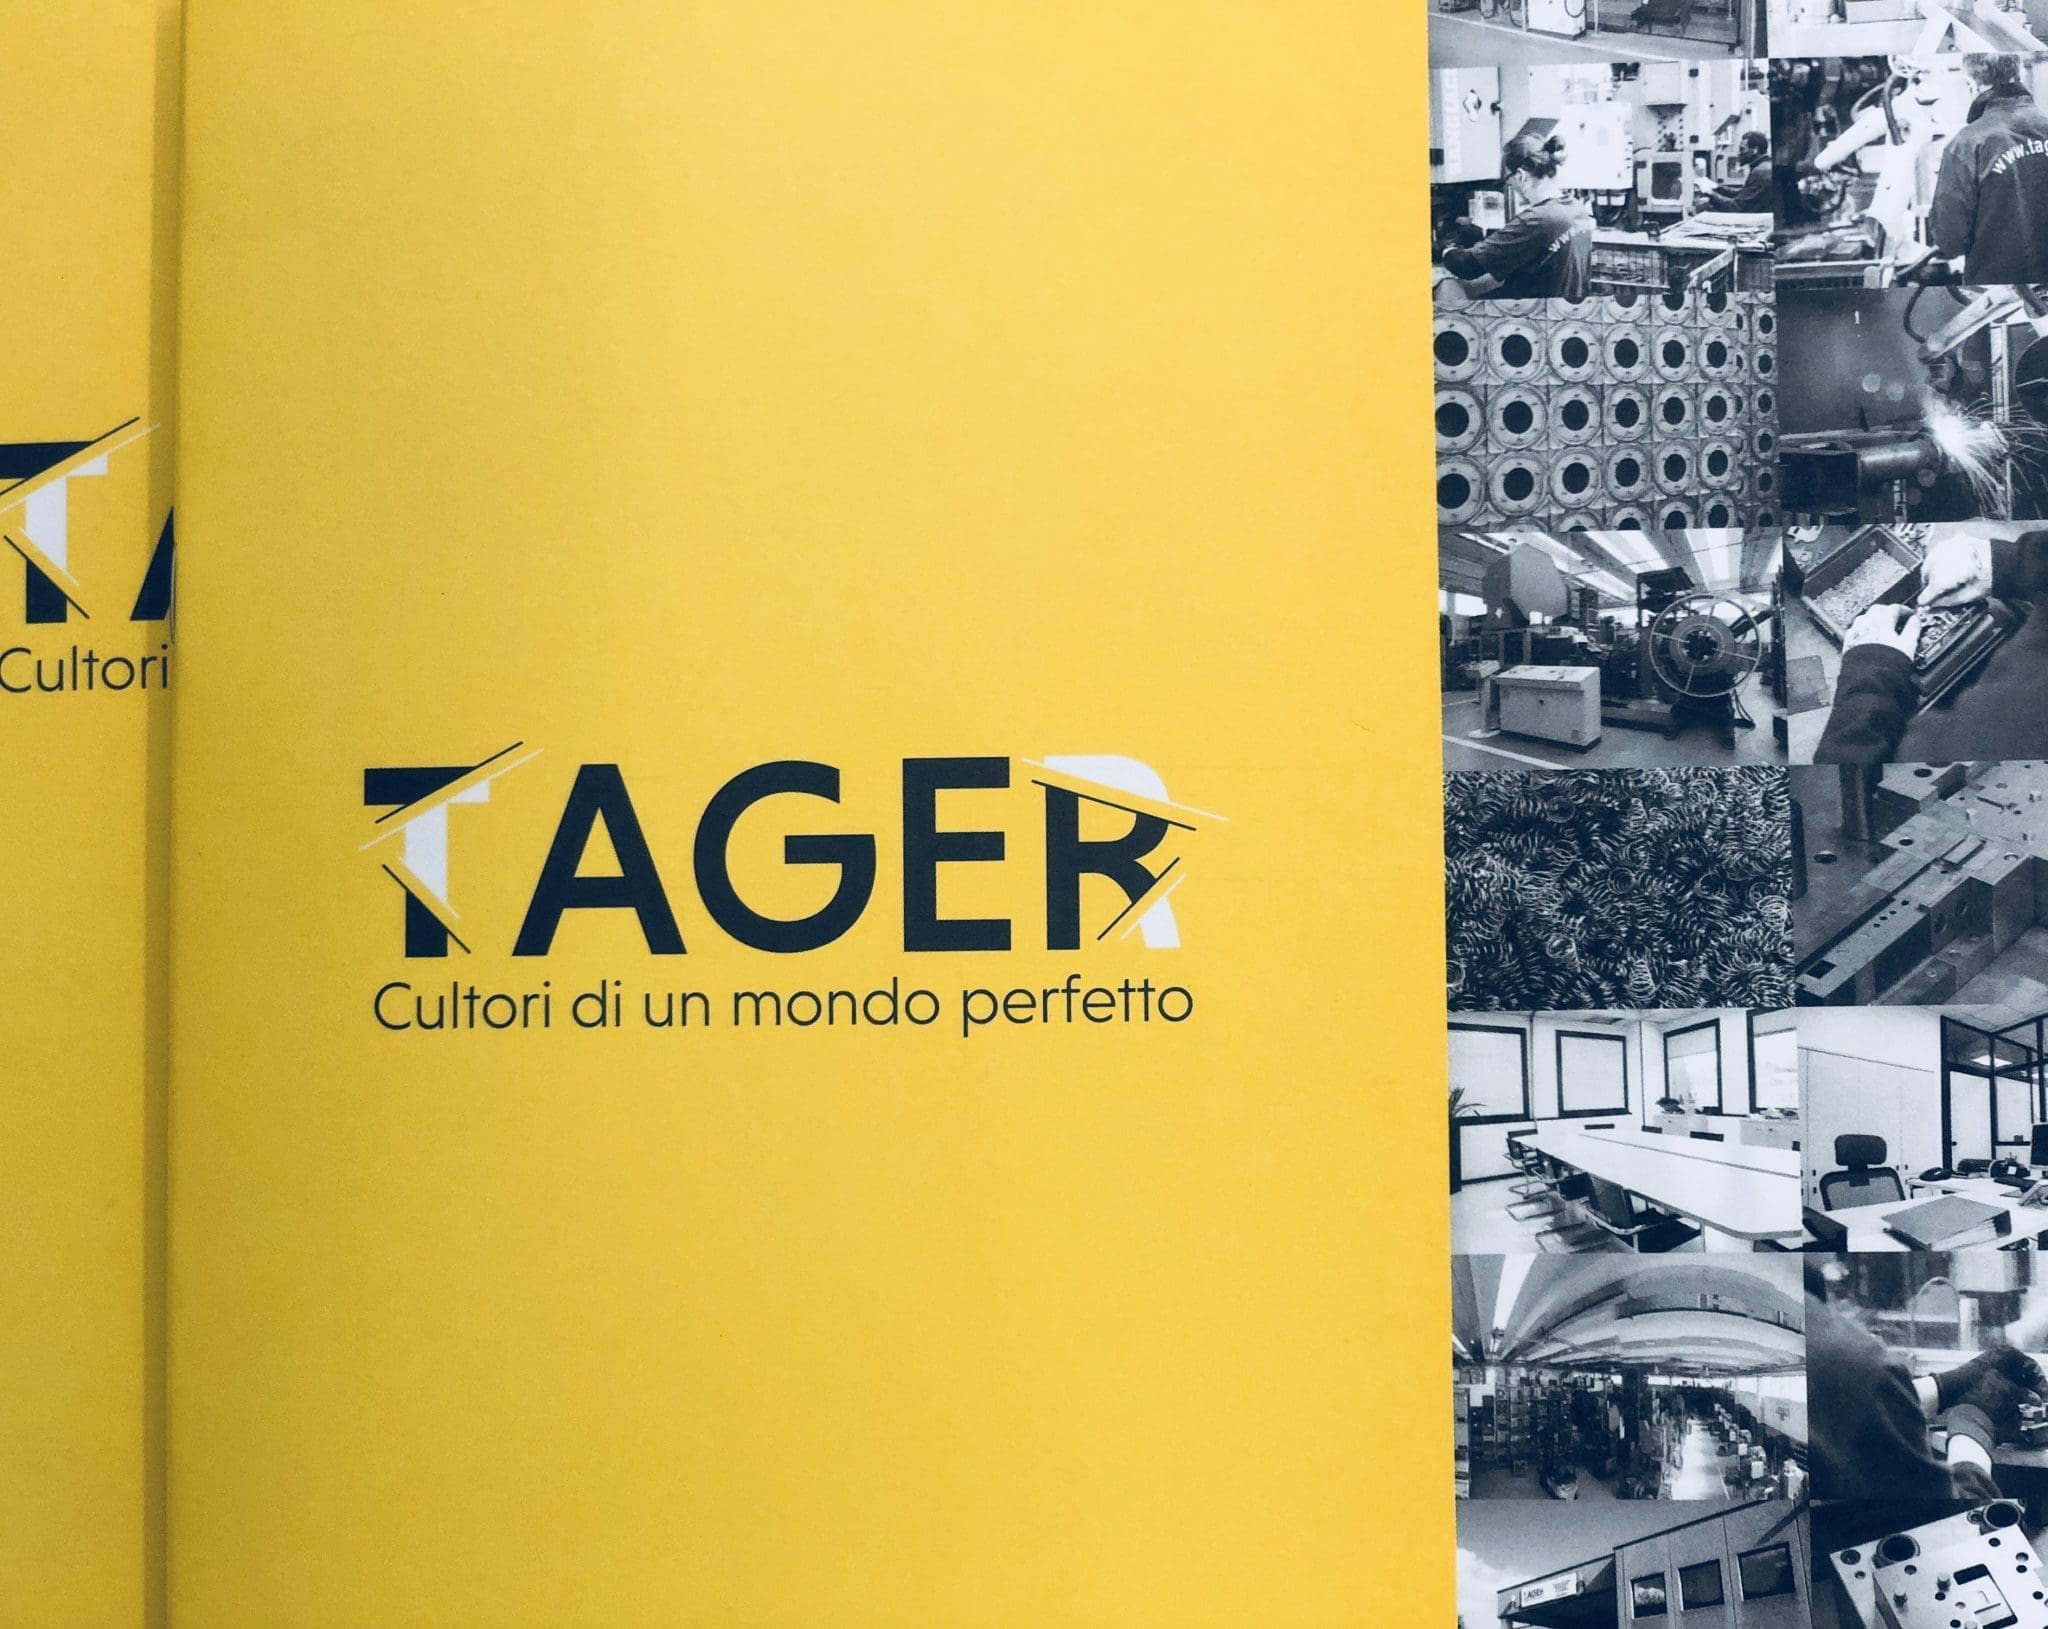 Realizzazione di una Brochure aziendale per aziendale di brescia: Tager